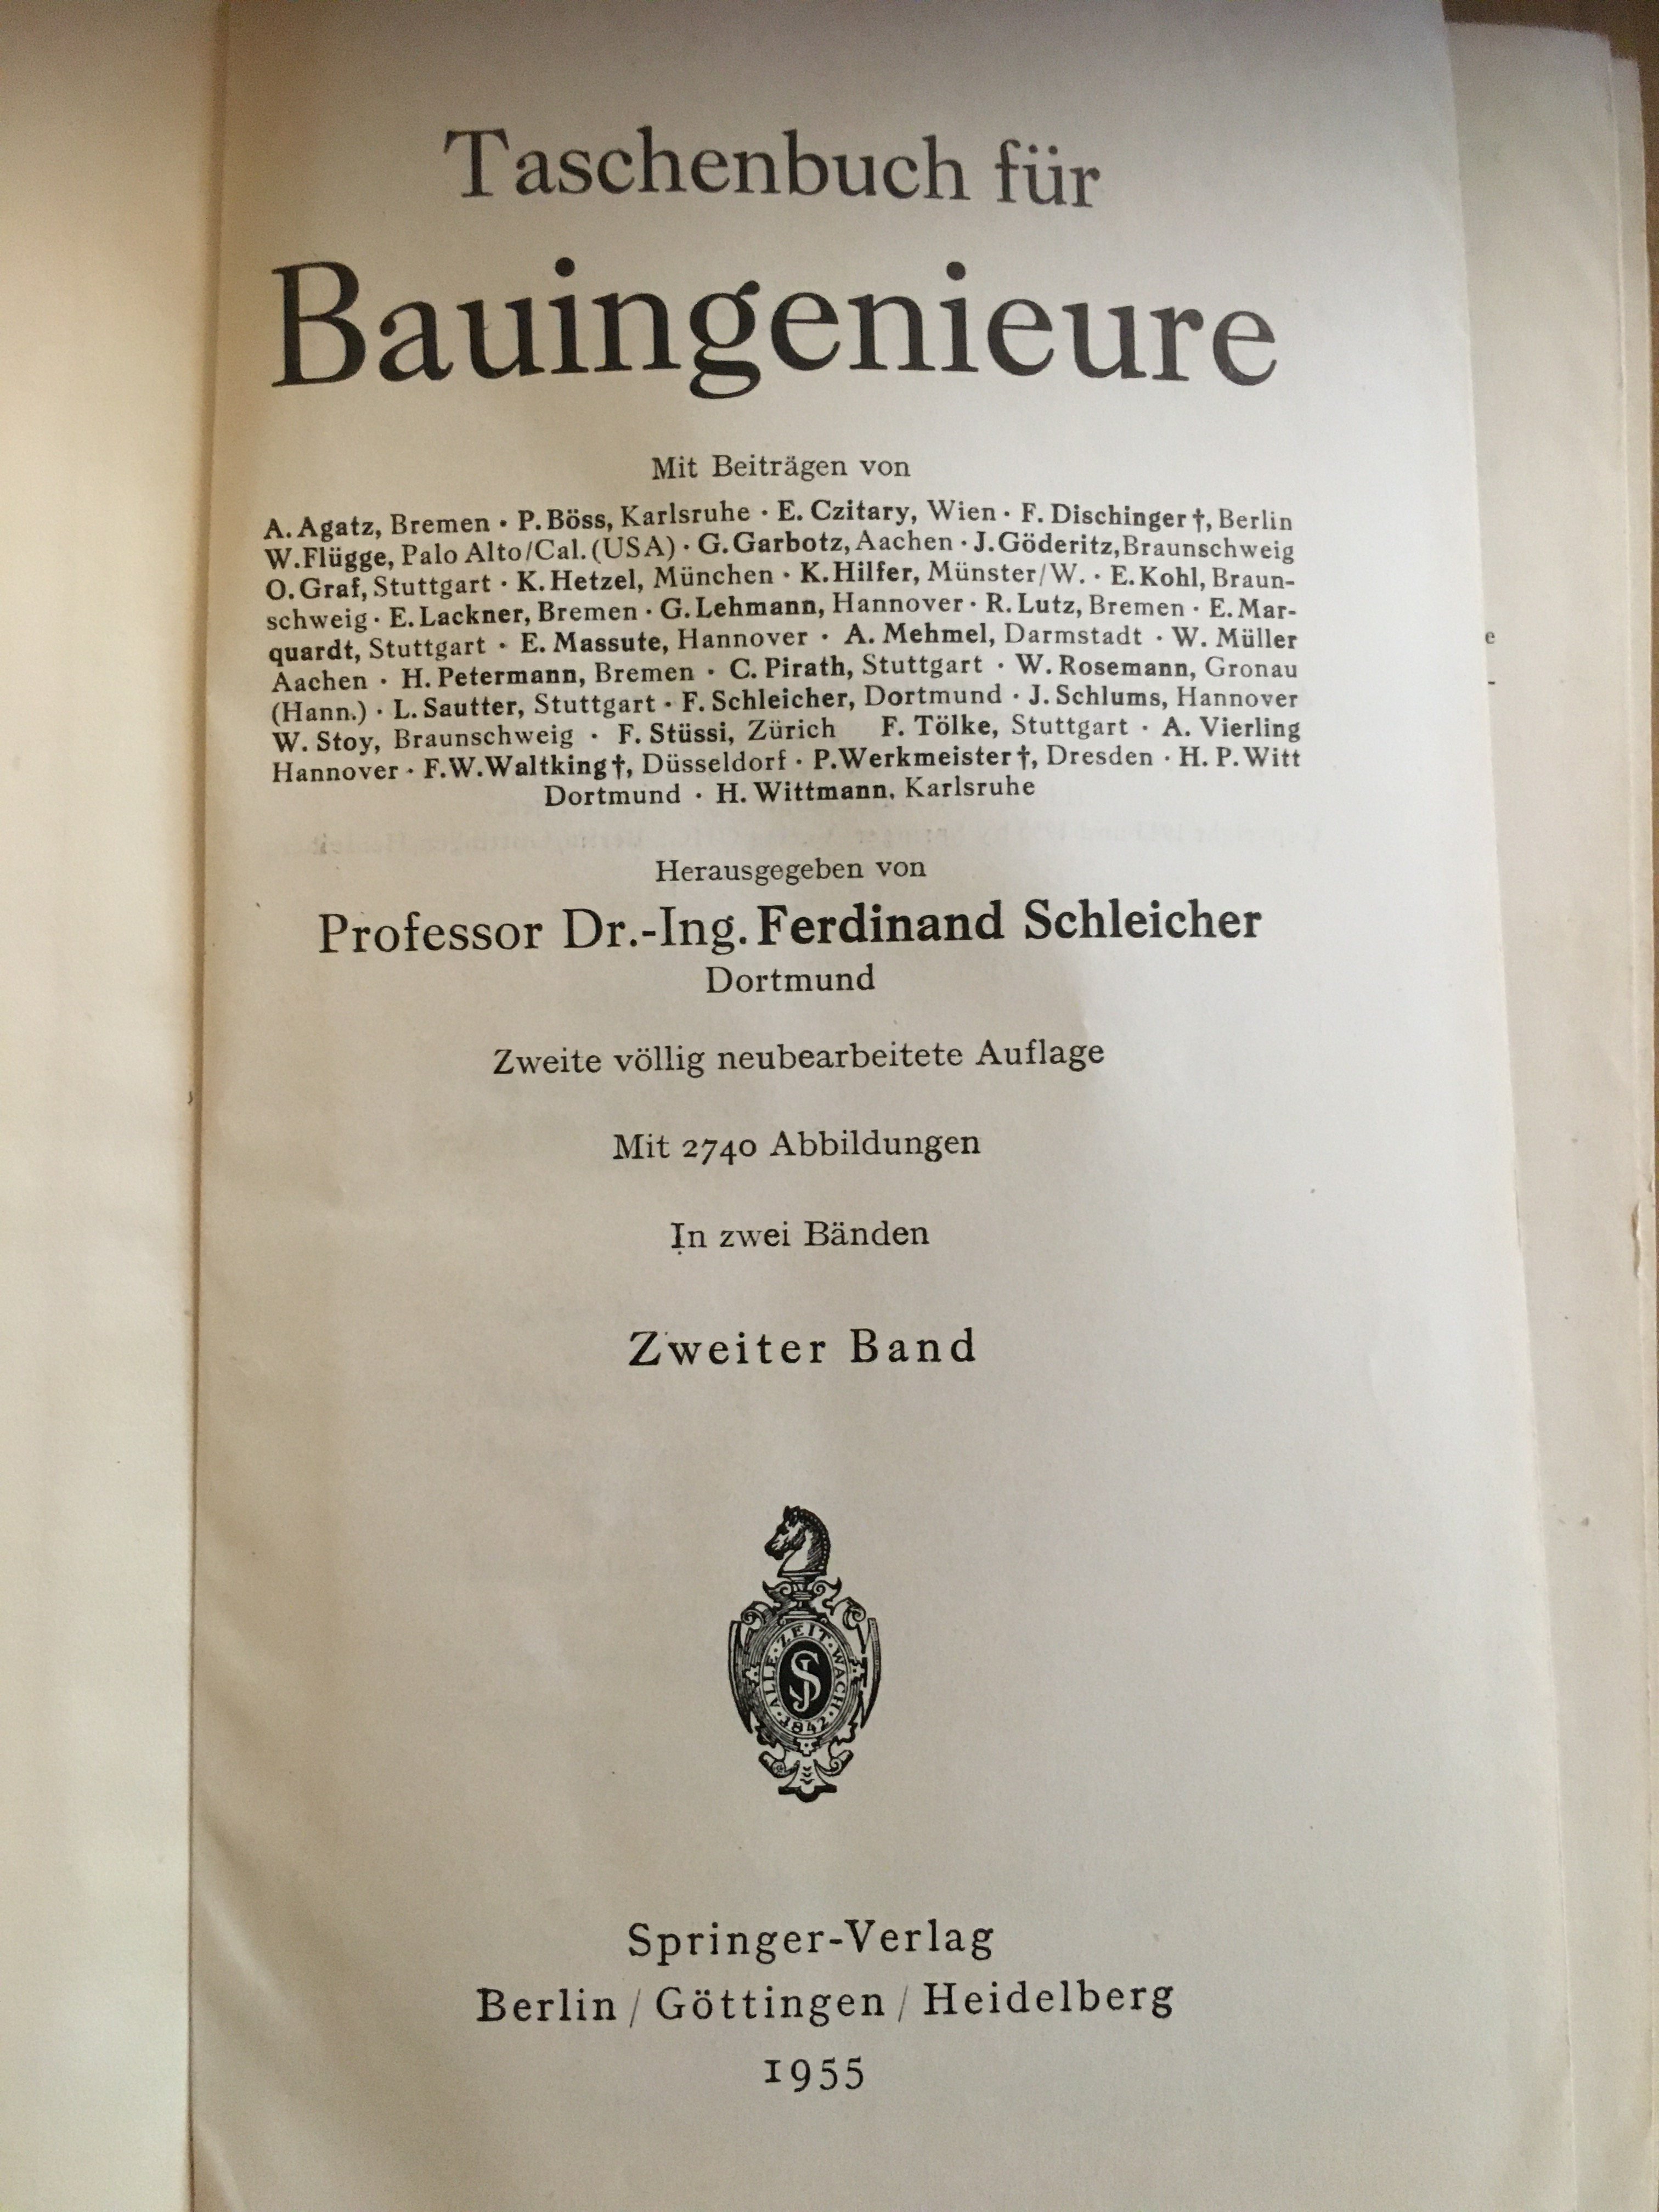 Taschenbuch für Bauingenieure, 1955. (Besucherbergwerk und Bergbaumuseum "Grube Silberhardt" CC BY-NC-SA)